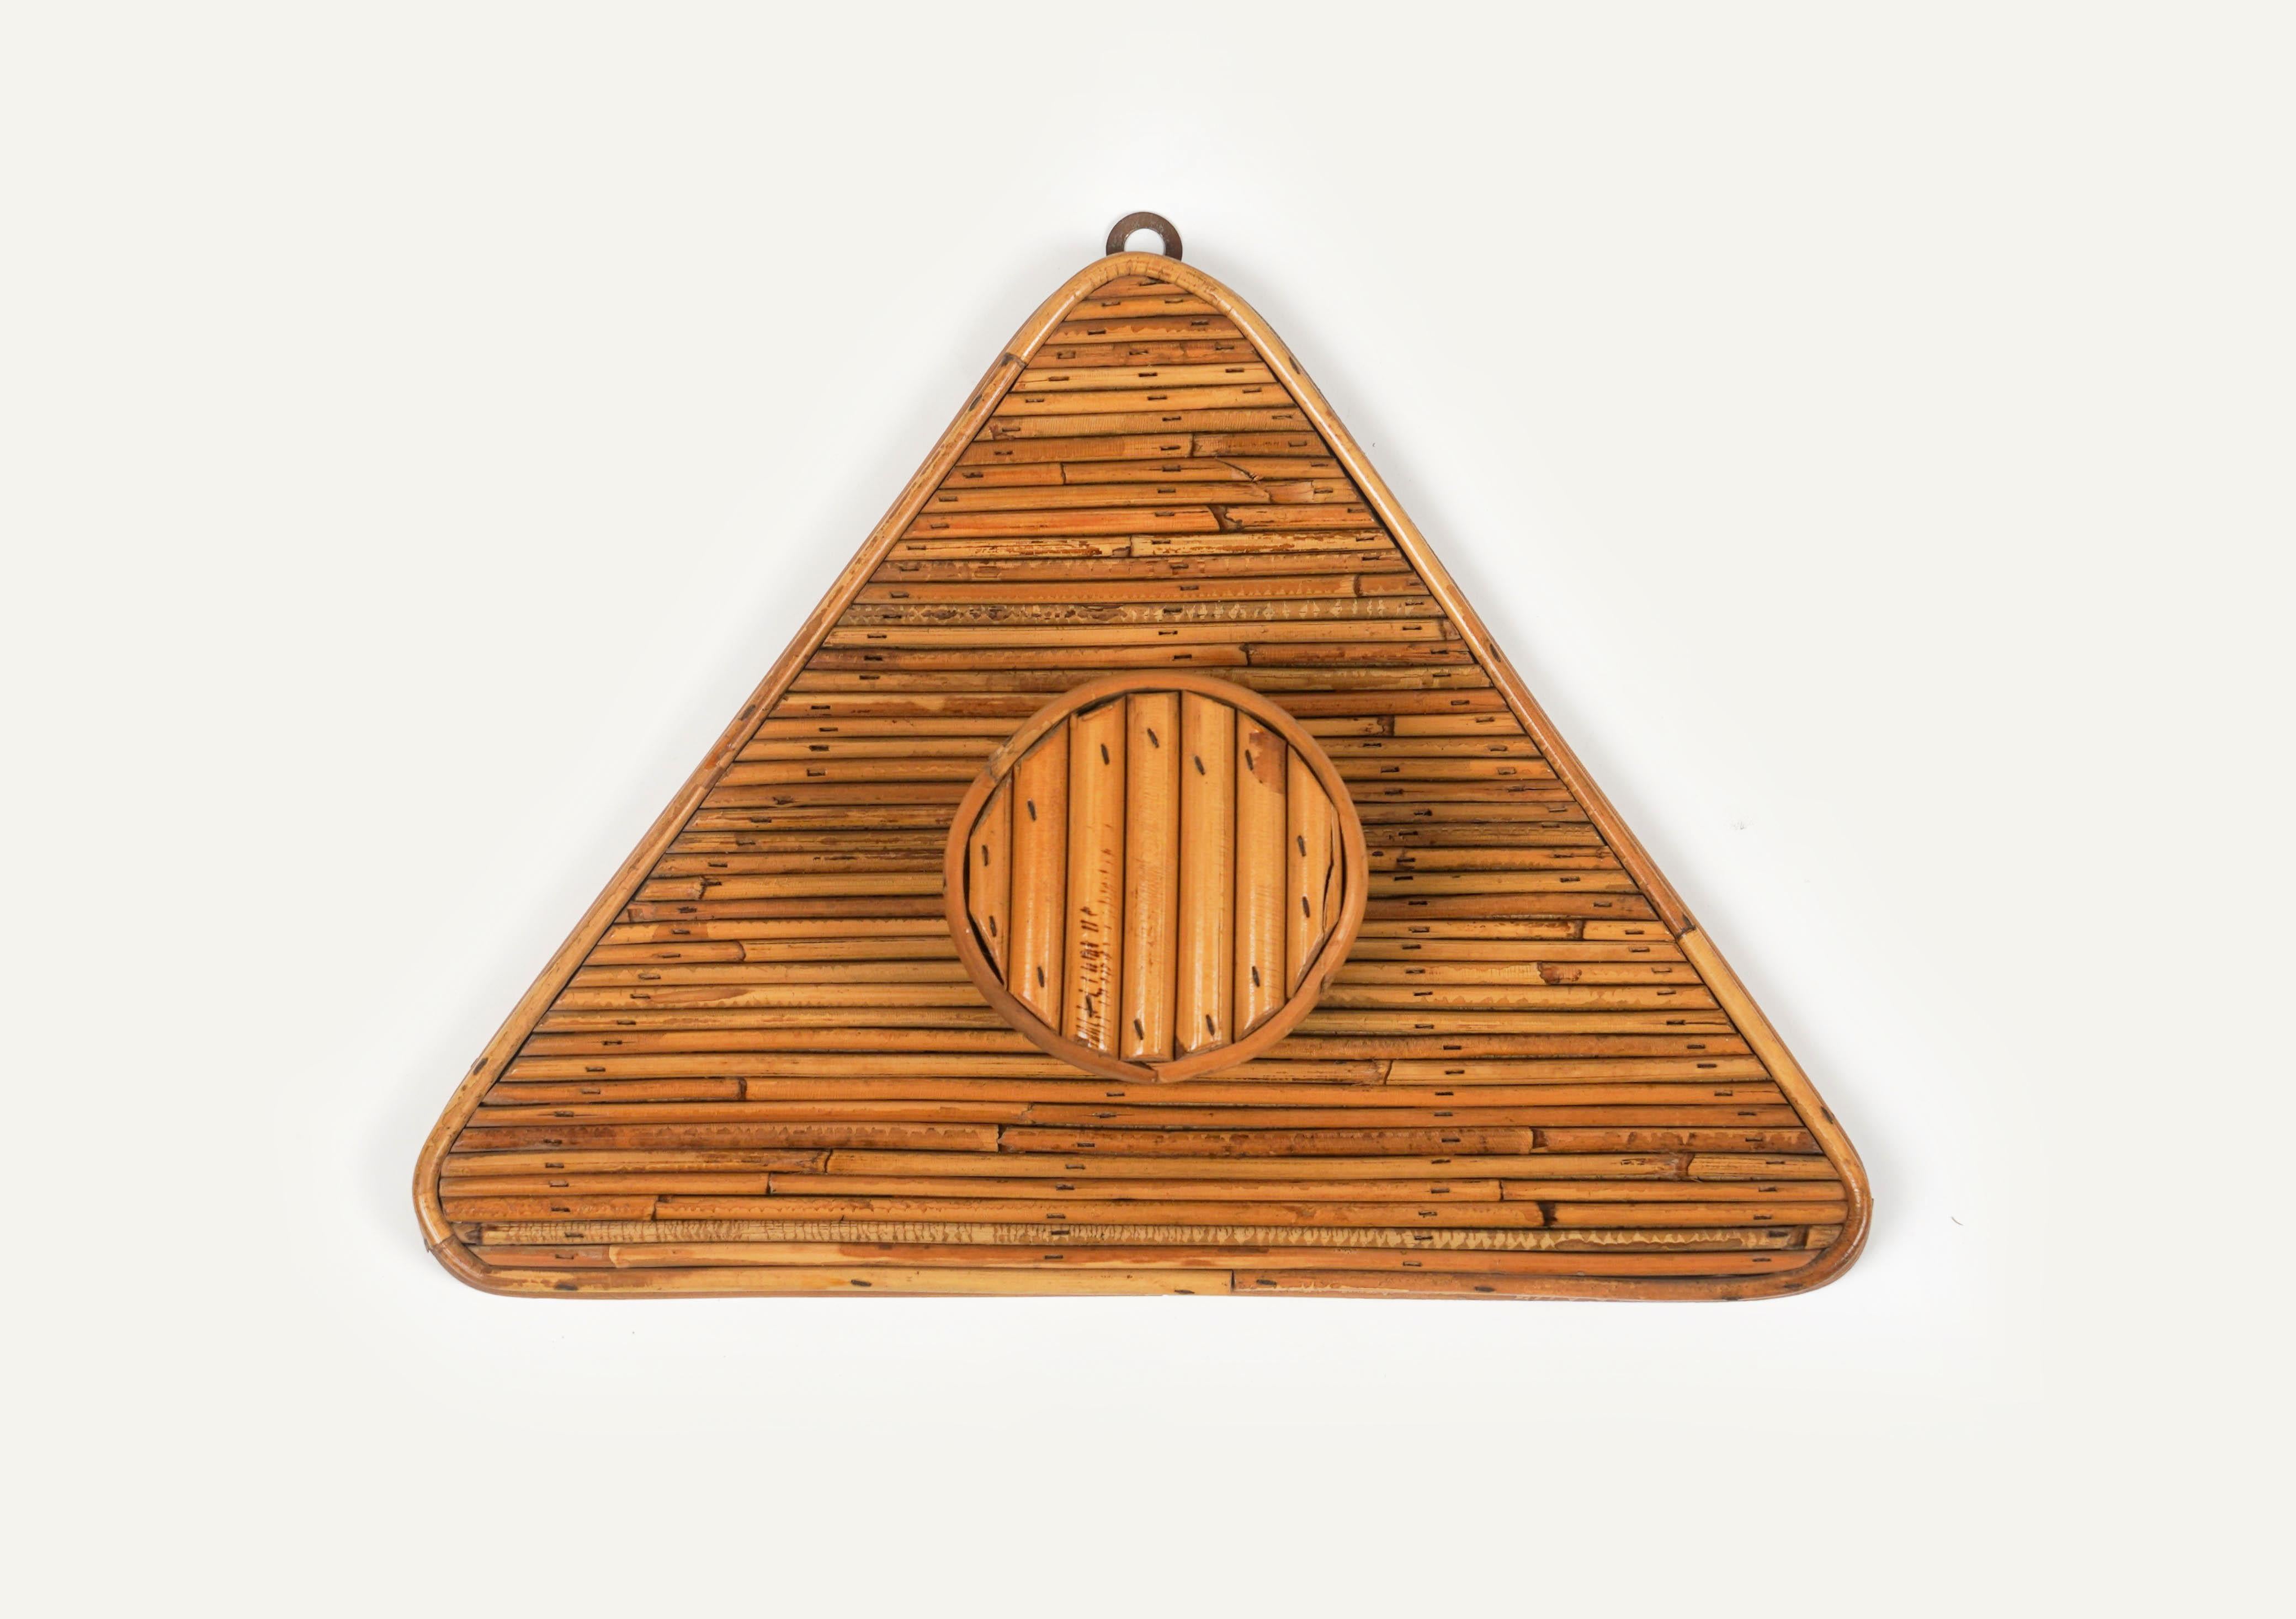 Magnifique porte-manteau triangulaire du milieu du siècle en bambou et rotin dans le style de Viavai Del Sud.

Fabriqué en Italie dans les années 1960.

Vivai del sud, Gabriella Crespi et Arpex étaient les trois principaux studios de design dans